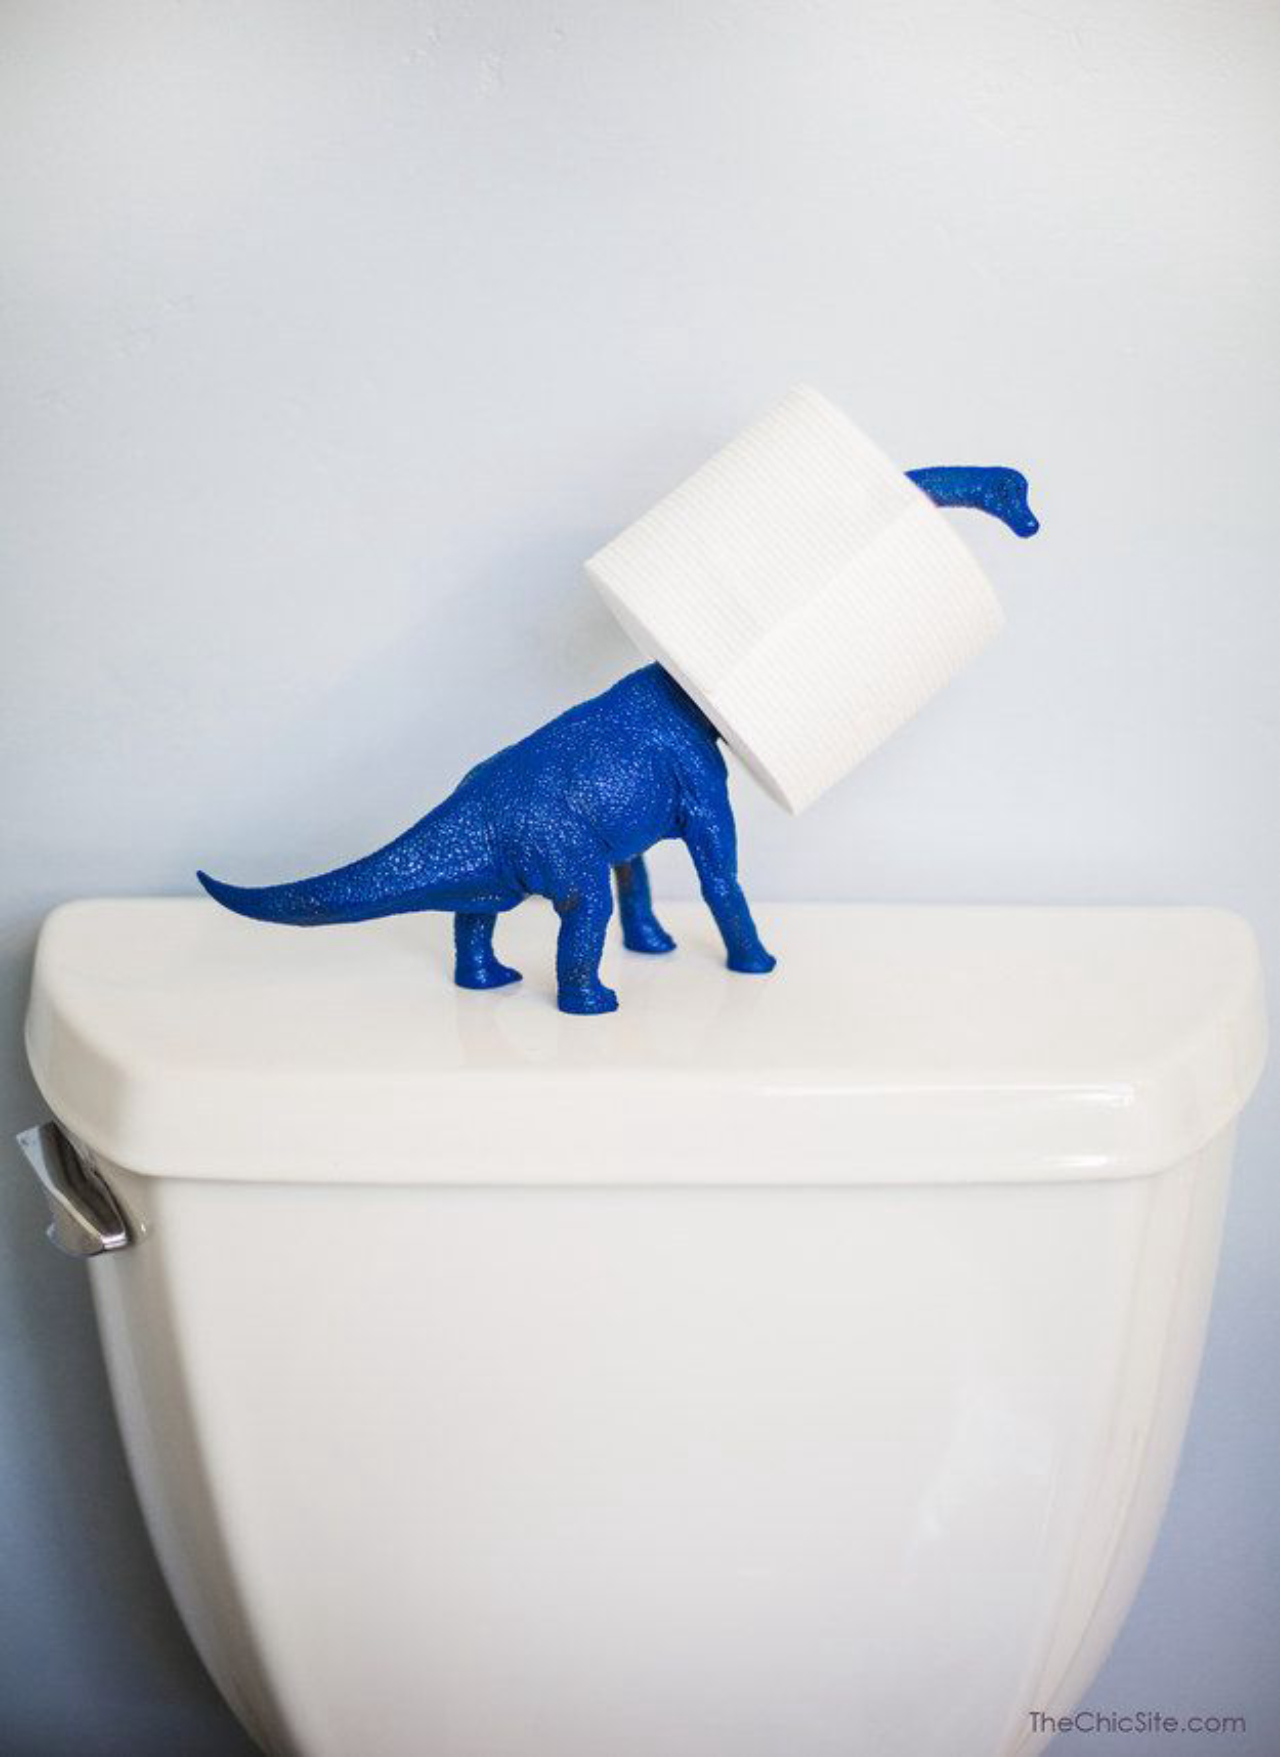 Dinossauro também virou suporte para papel higiênico. 